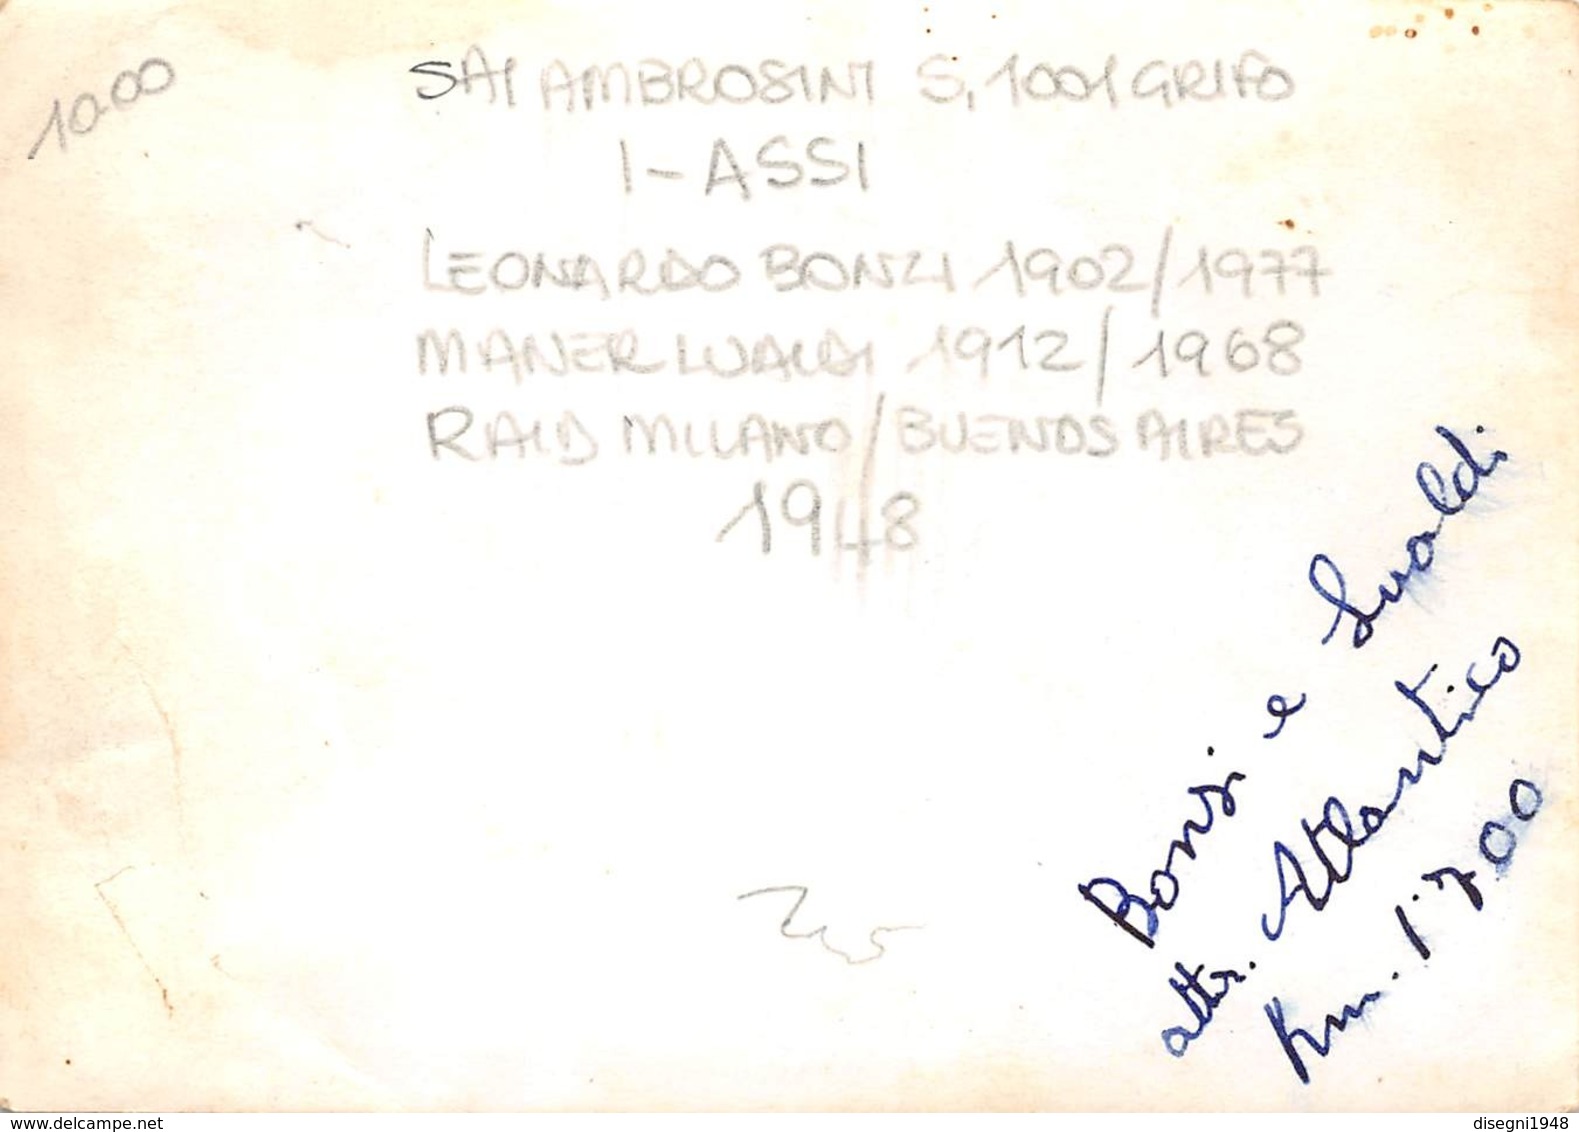 08797 "SAI AMBROSINI S.1001 GRIFO I-ASSI / L. BONZI (1902/77) M. LUALDI (1912/68) RAID MILANO-B. AIRES 1948" FOTO ORIG. - Aviazione